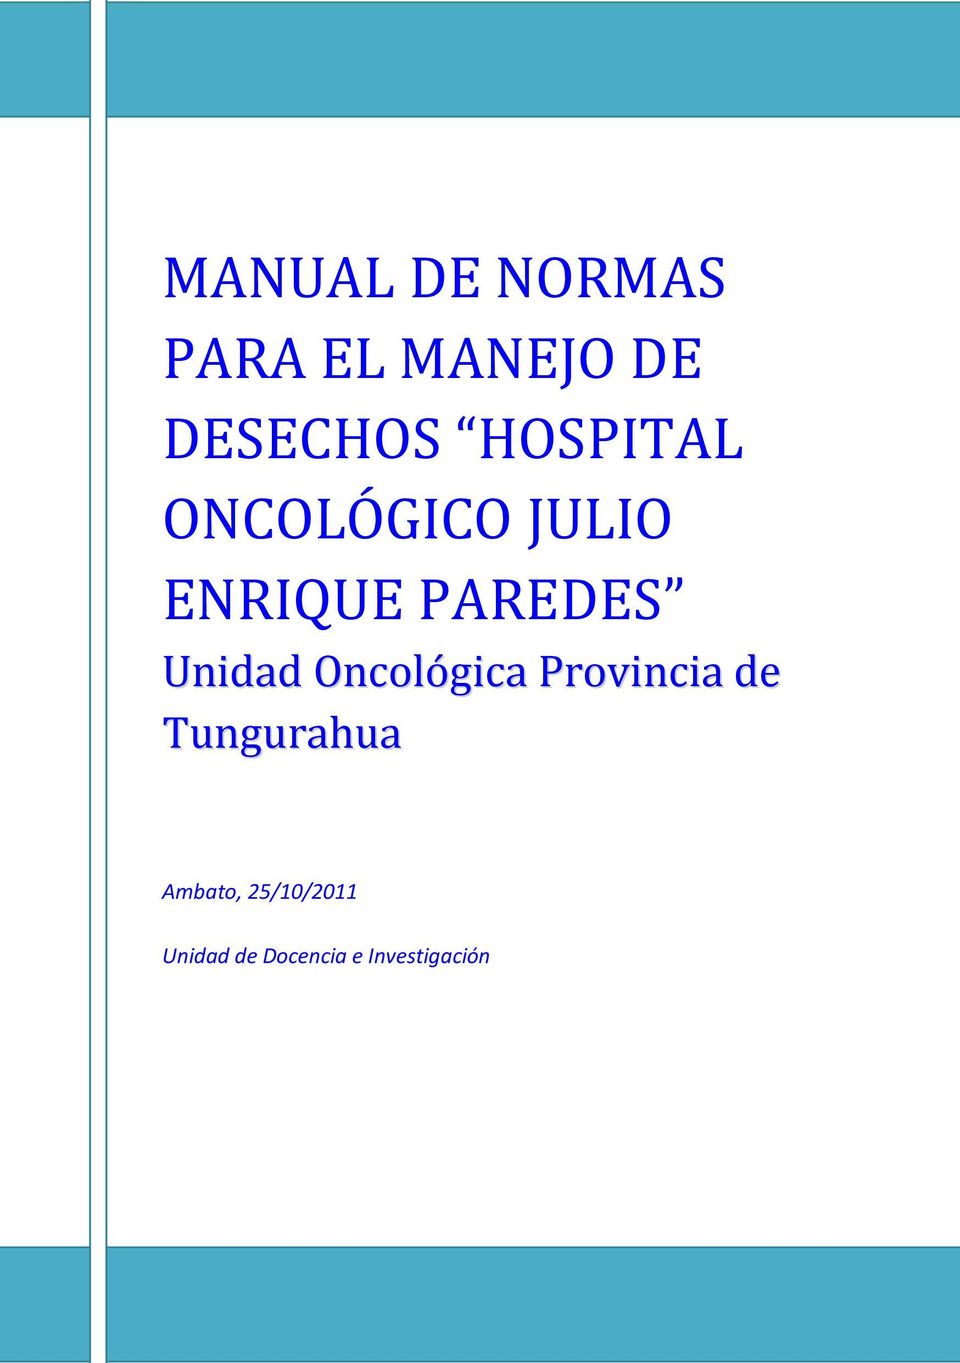 Unidad Oncológica Provincia de Tungurahua